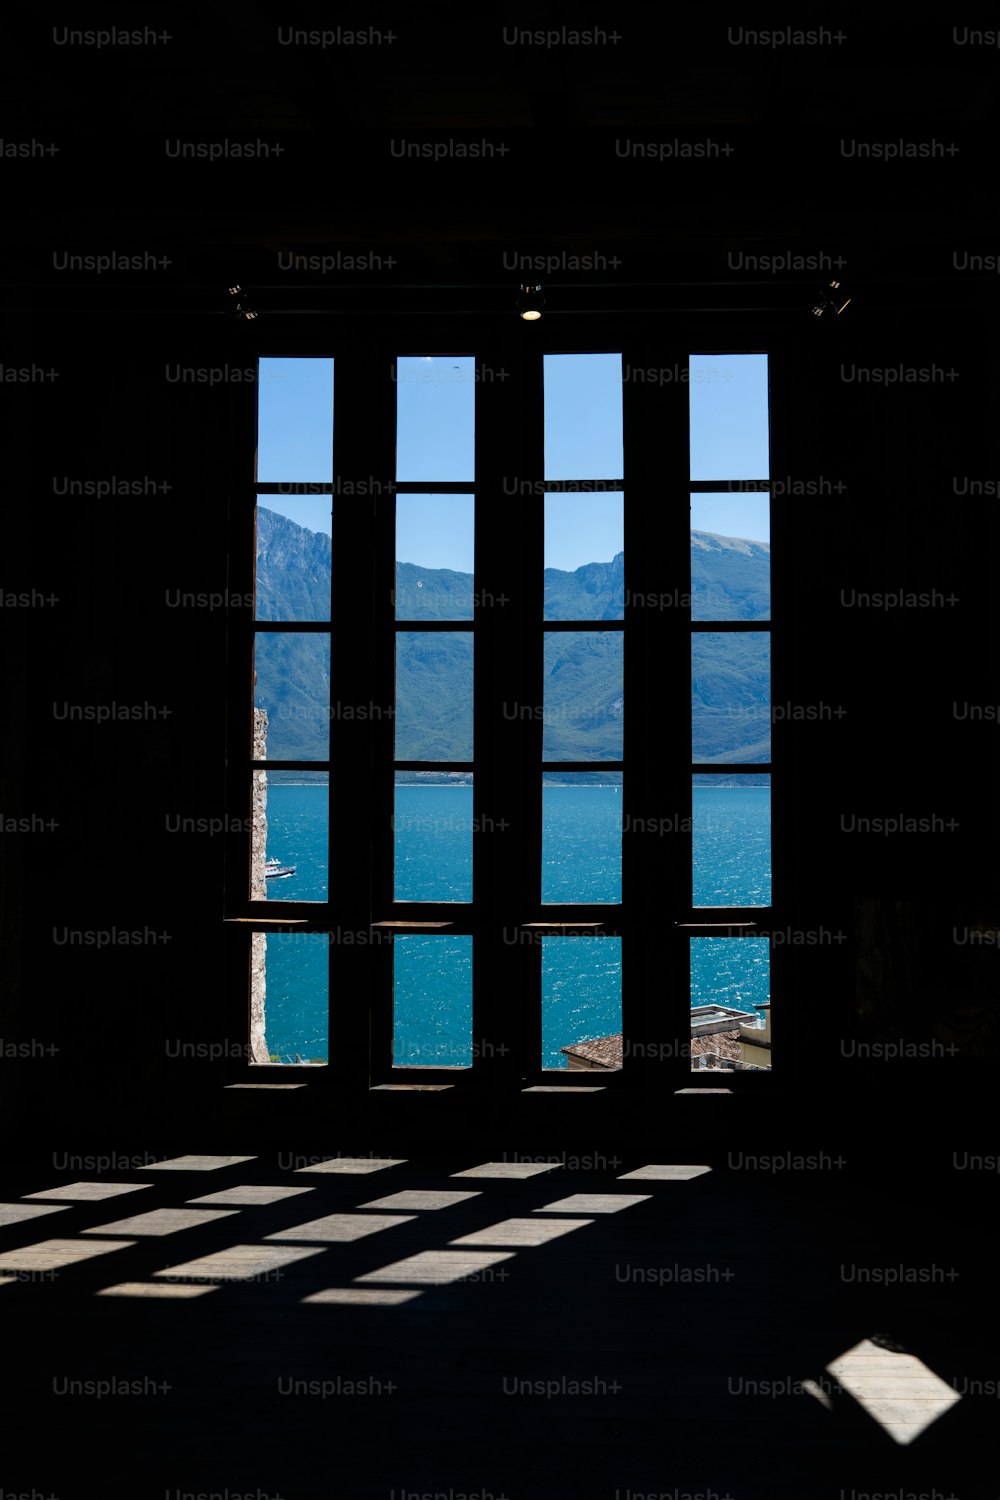 una finestra con vista su un lago e sulle montagne